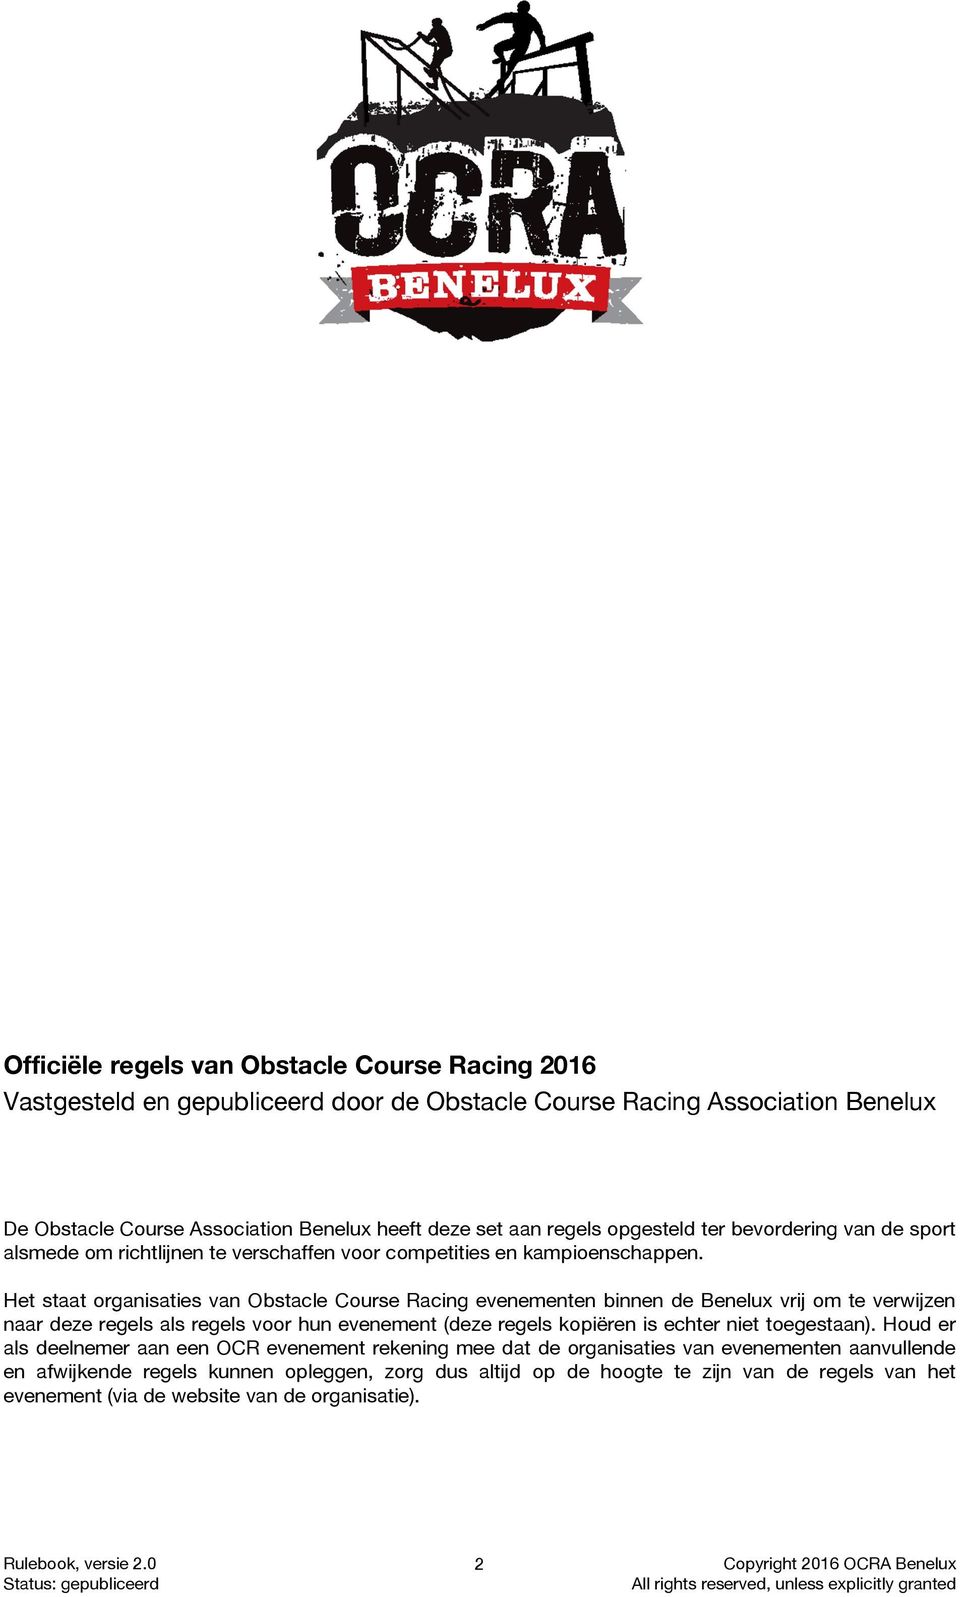 Het staat organisaties van Obstacle Course Racing evenementen binnen de Benelux vrij om te verwijzen naar deze regels als regels voor hun evenement (deze regels kopiëren is echter niet